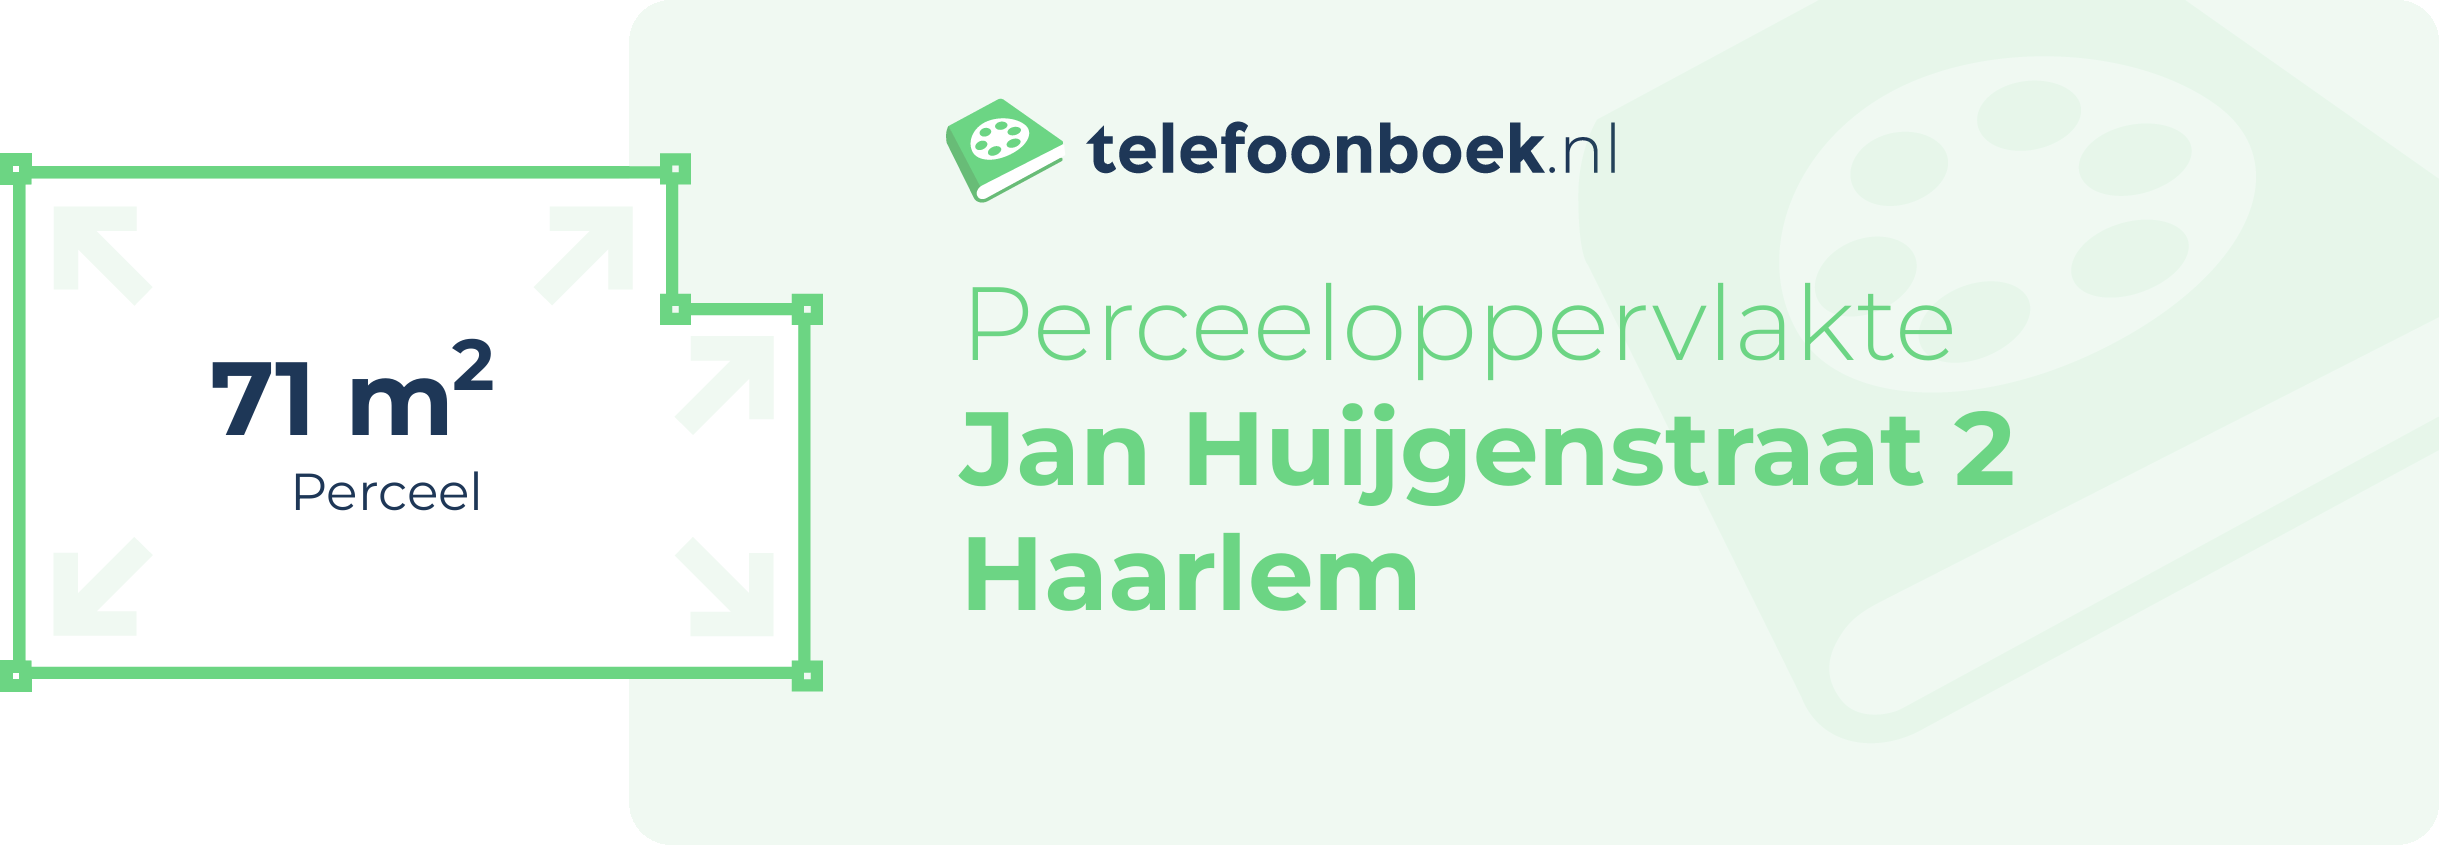 Perceeloppervlakte Jan Huijgenstraat 2 Haarlem